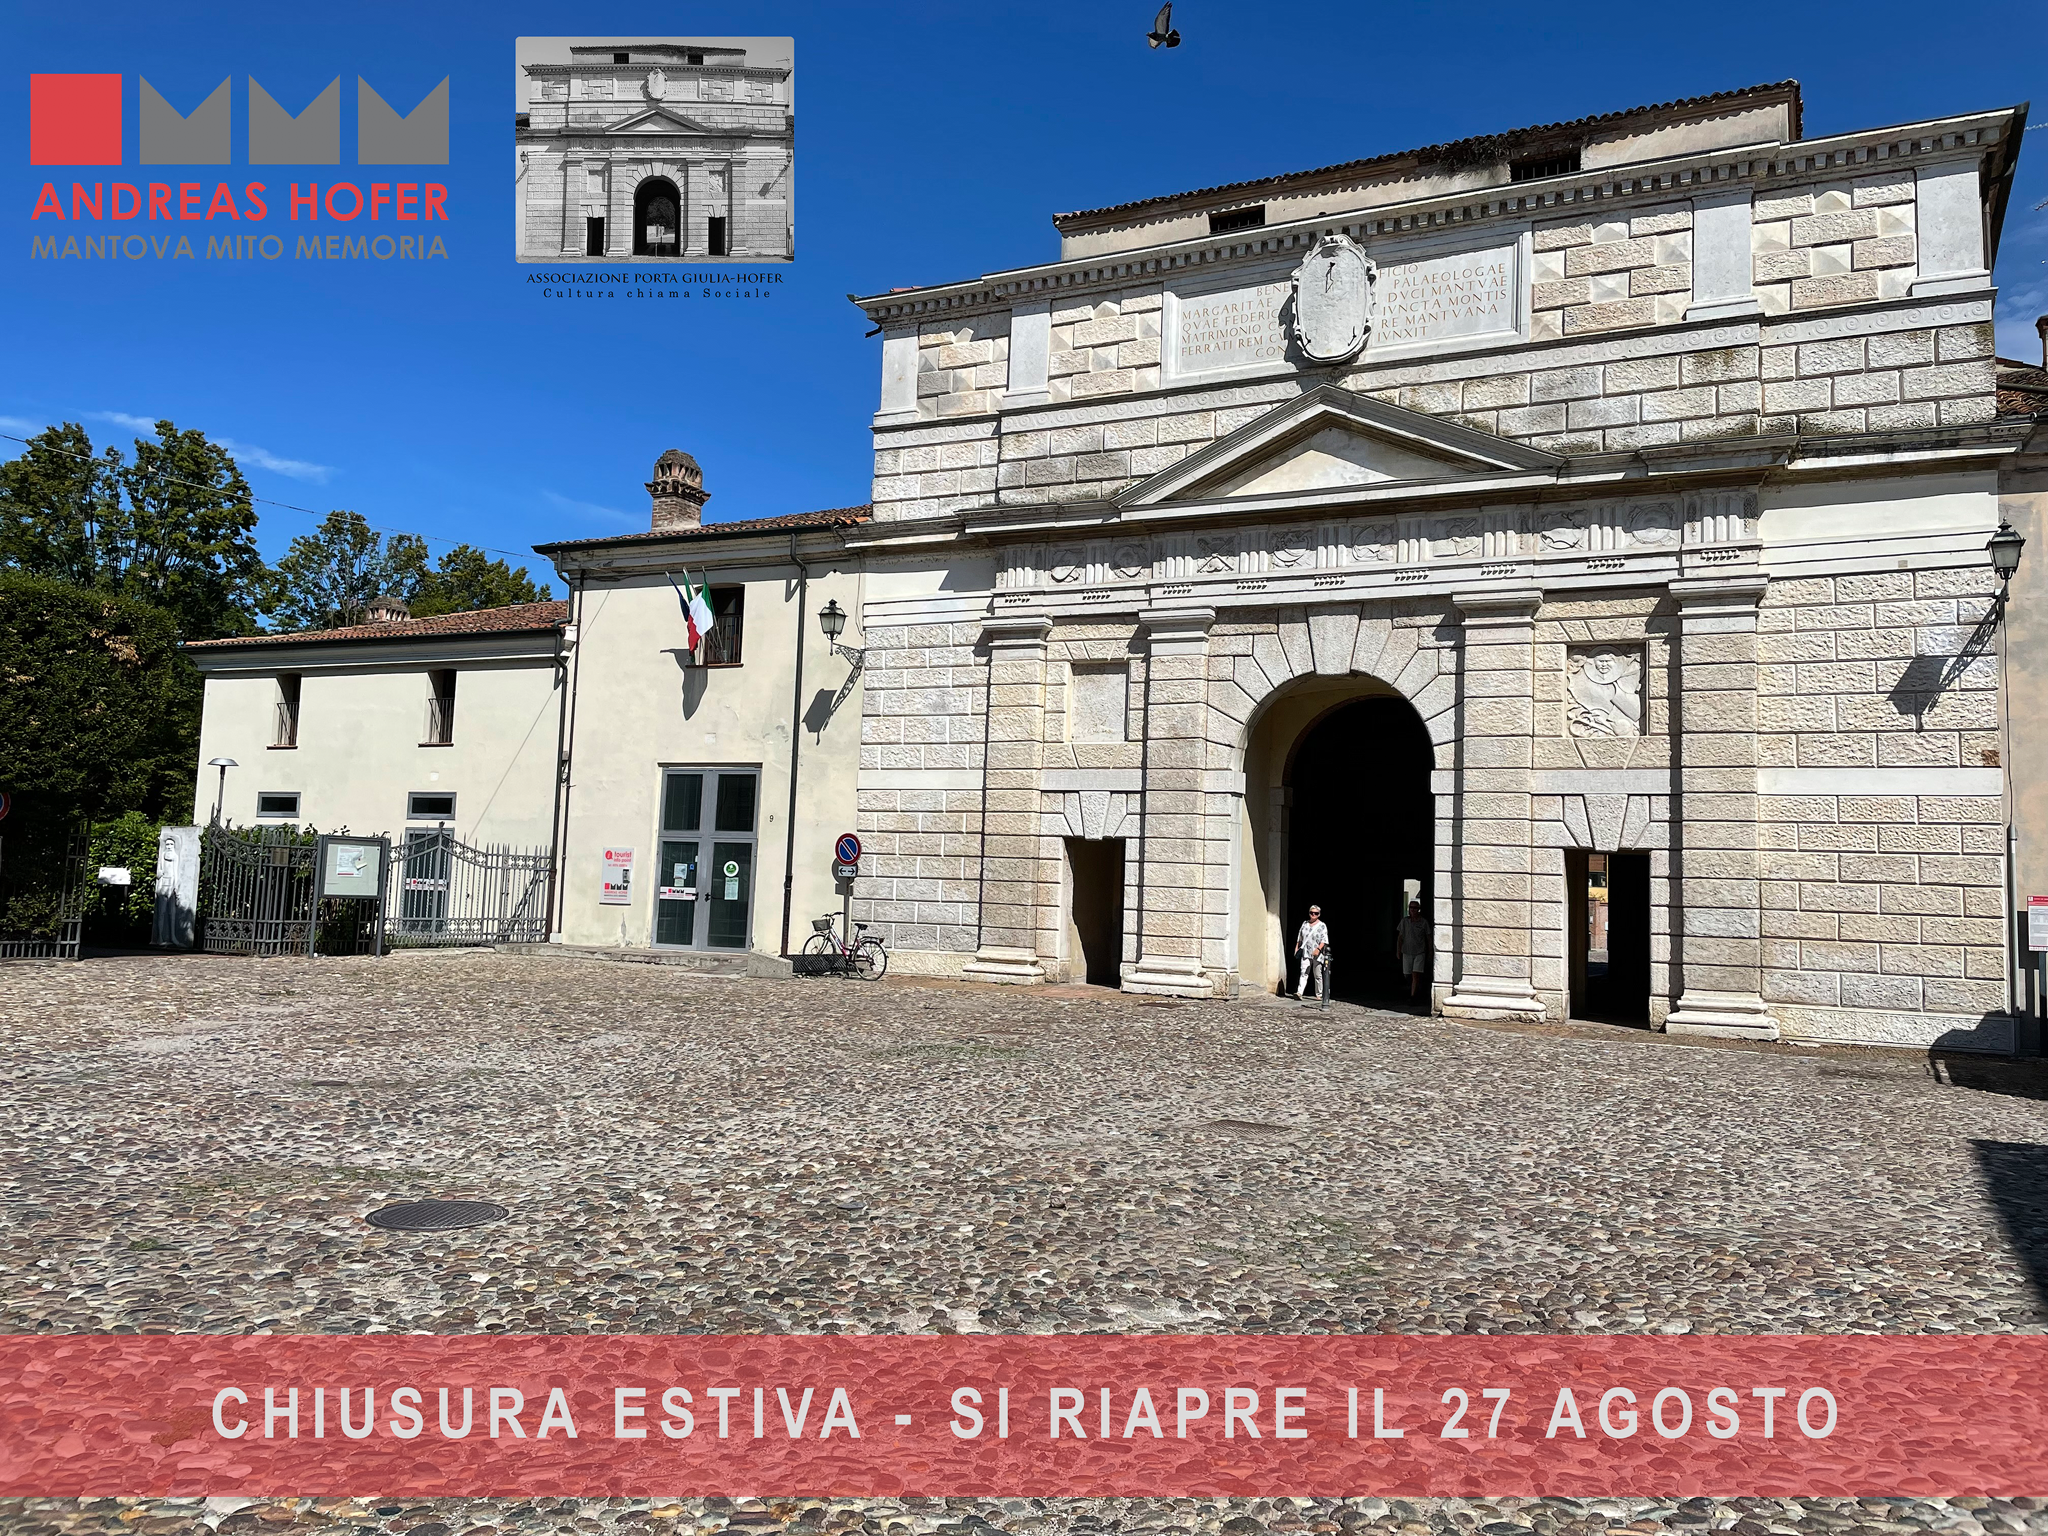 Chiusura estiva Info point turistico porta Giulia – museo Hofer MANTOVA